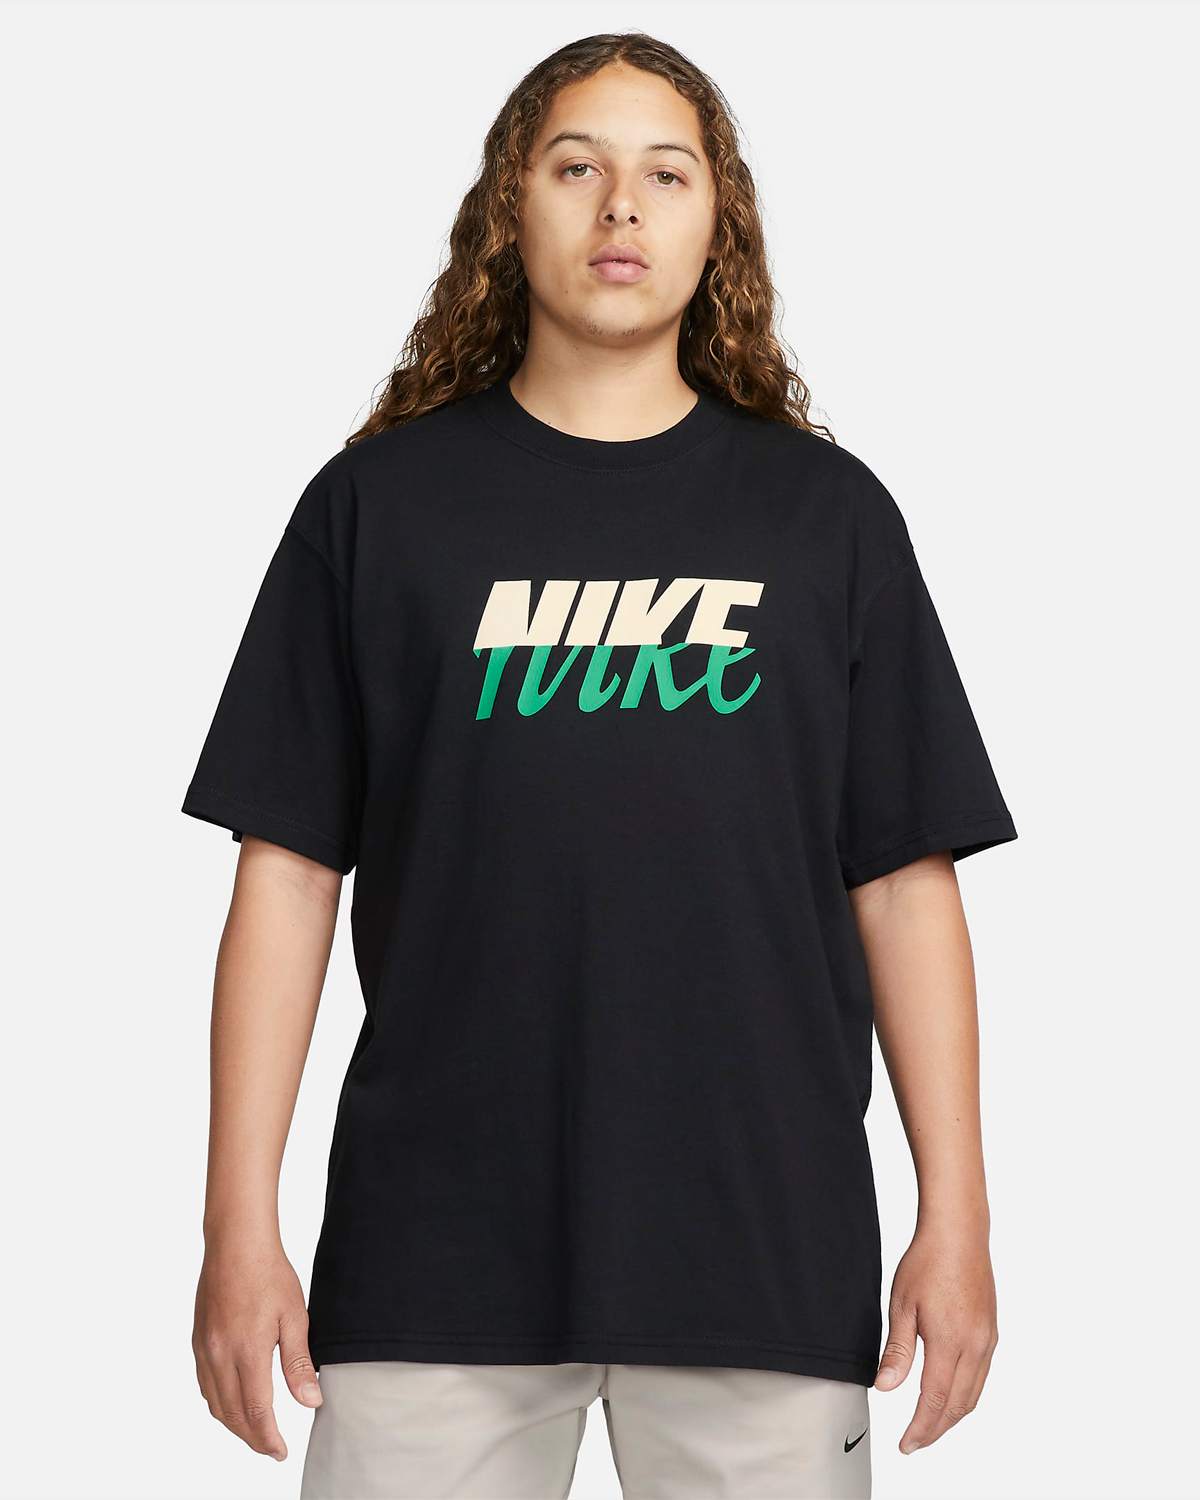 Nike-Sportswear-Split-T-Shirt-Black-Green